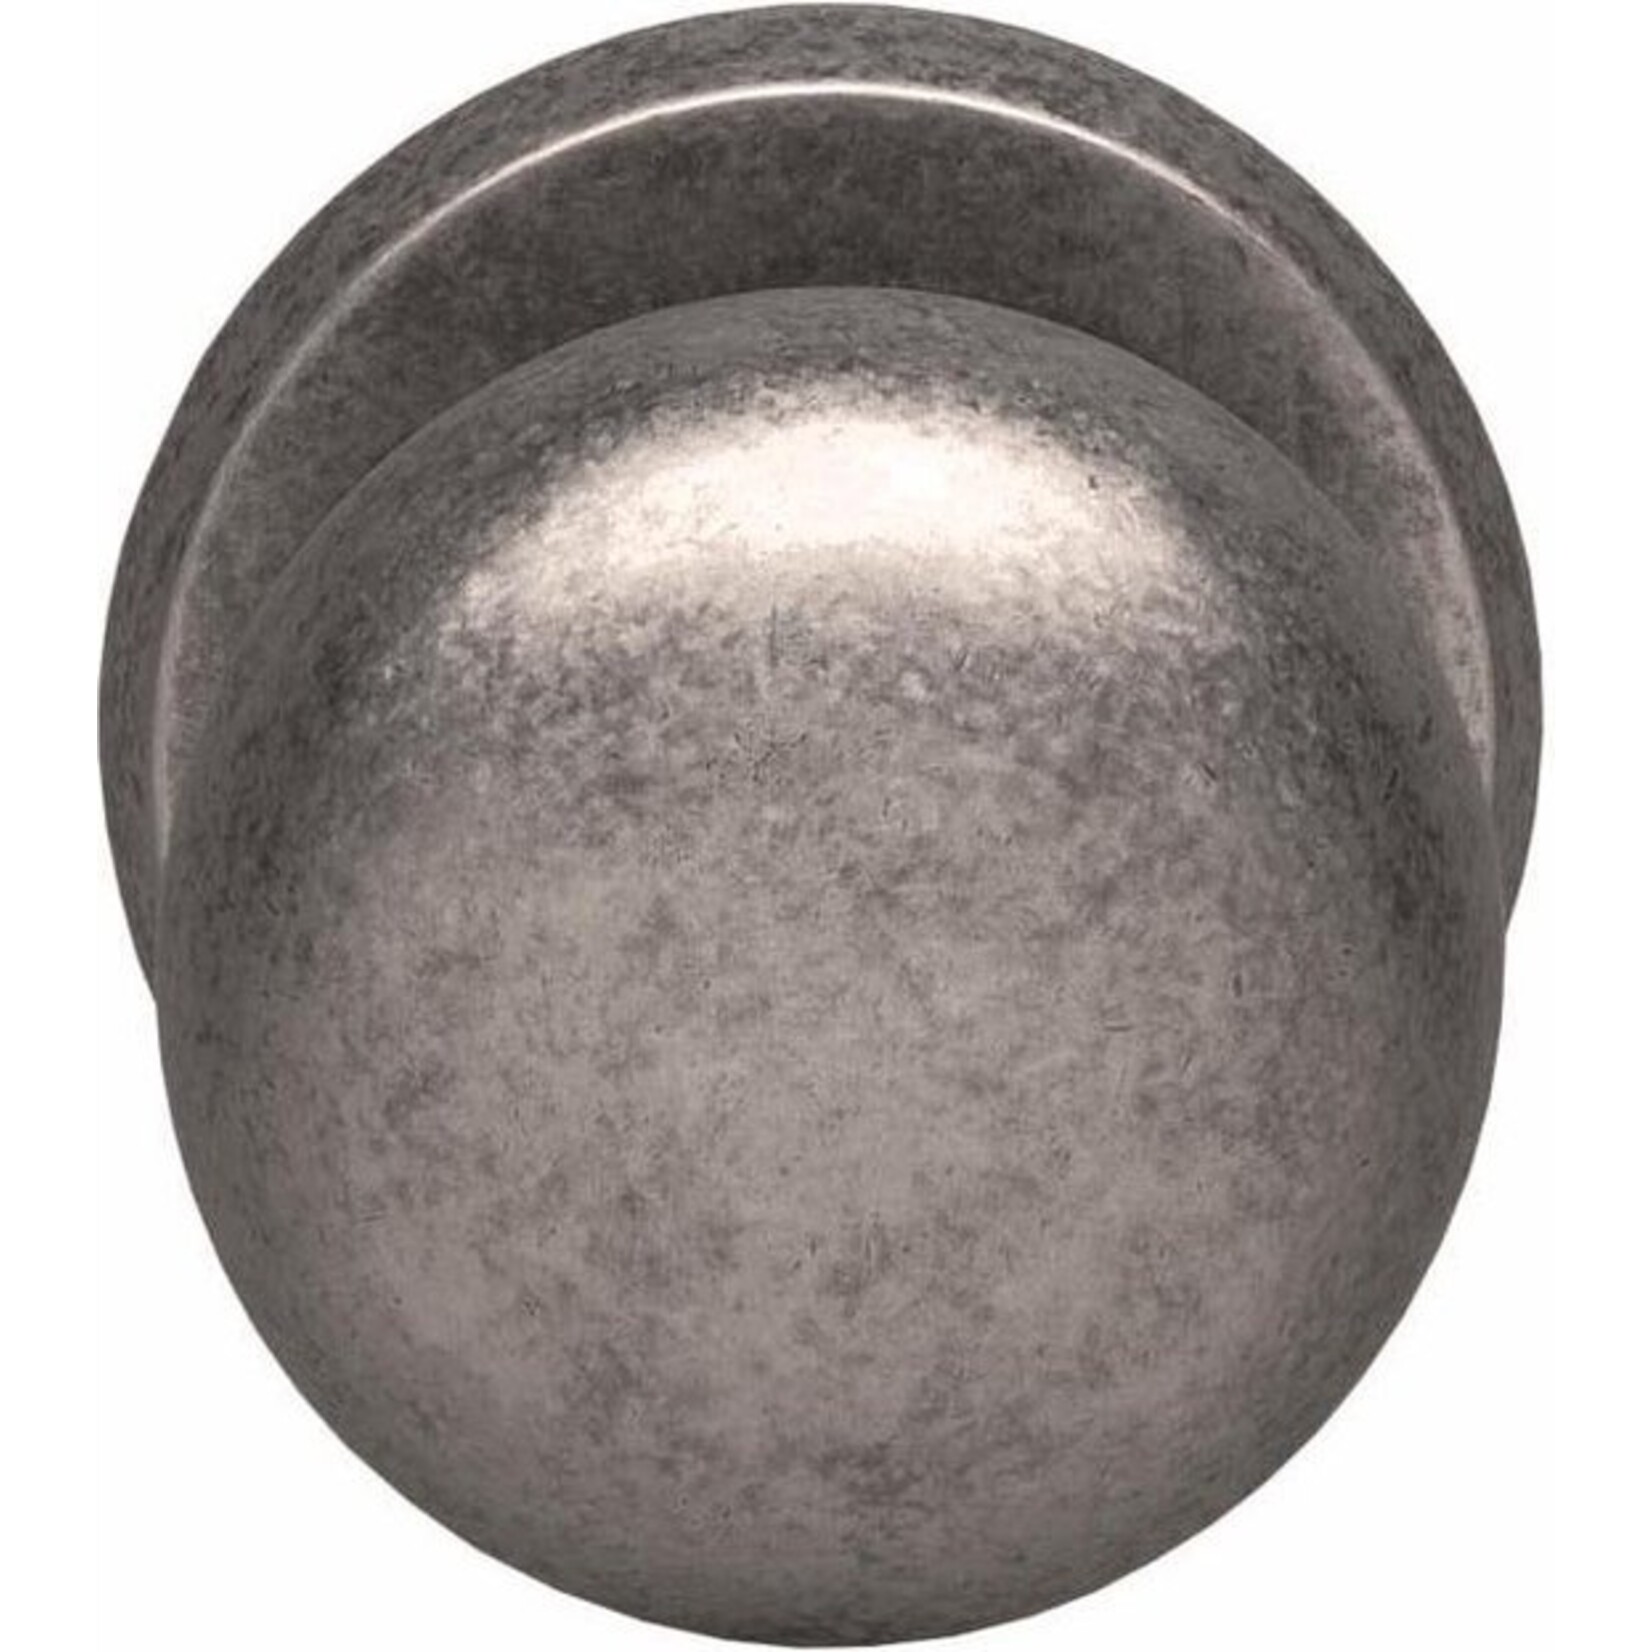 Intersteel Voordeurknop zwaar oud grijs